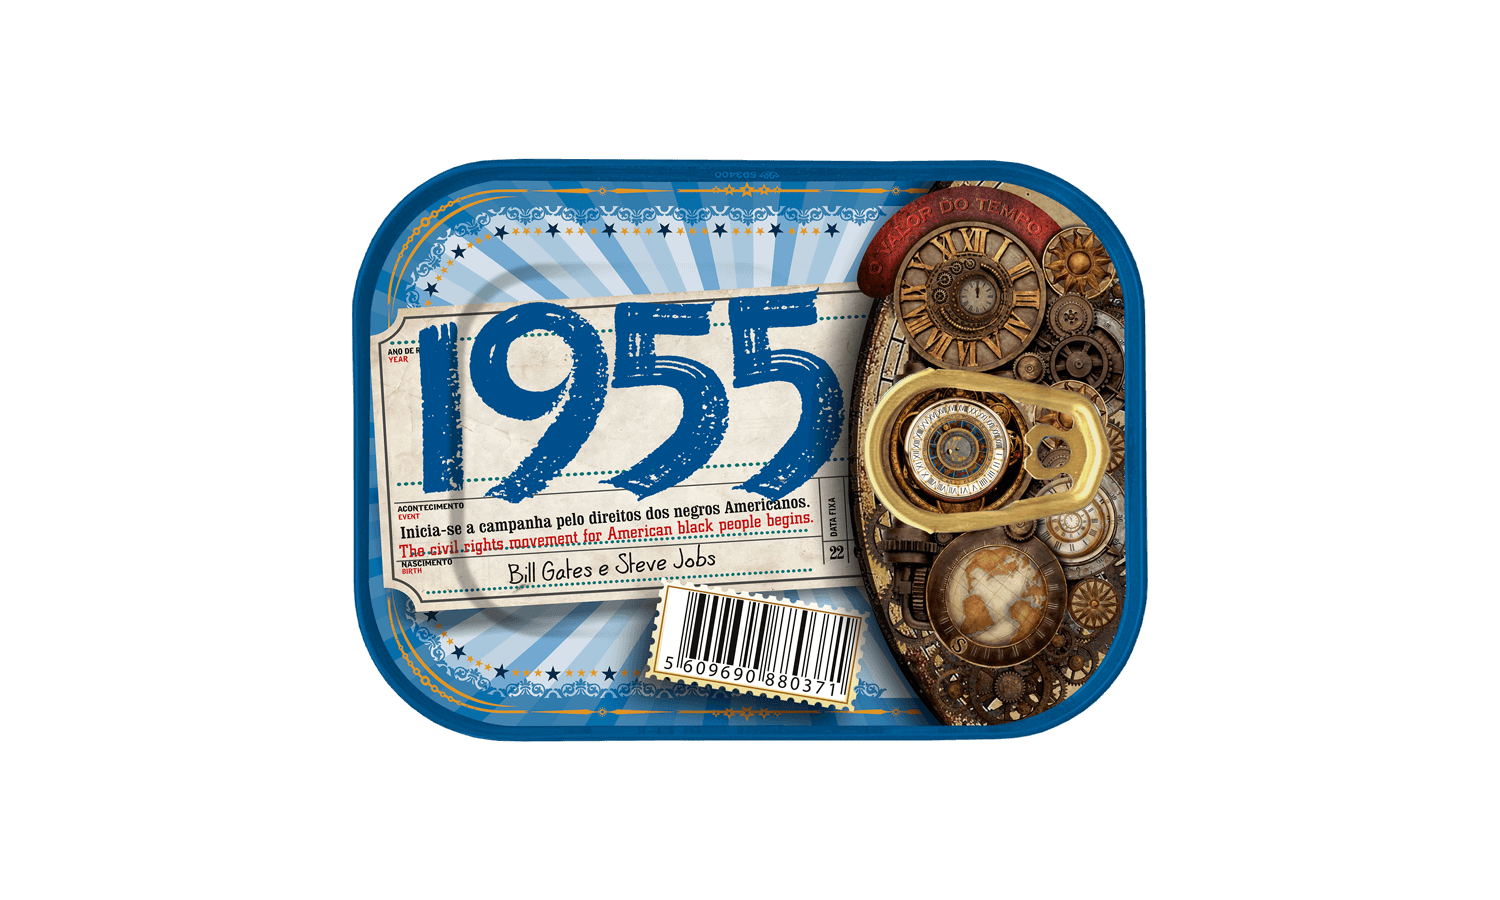 Timeless Sardines | 1955